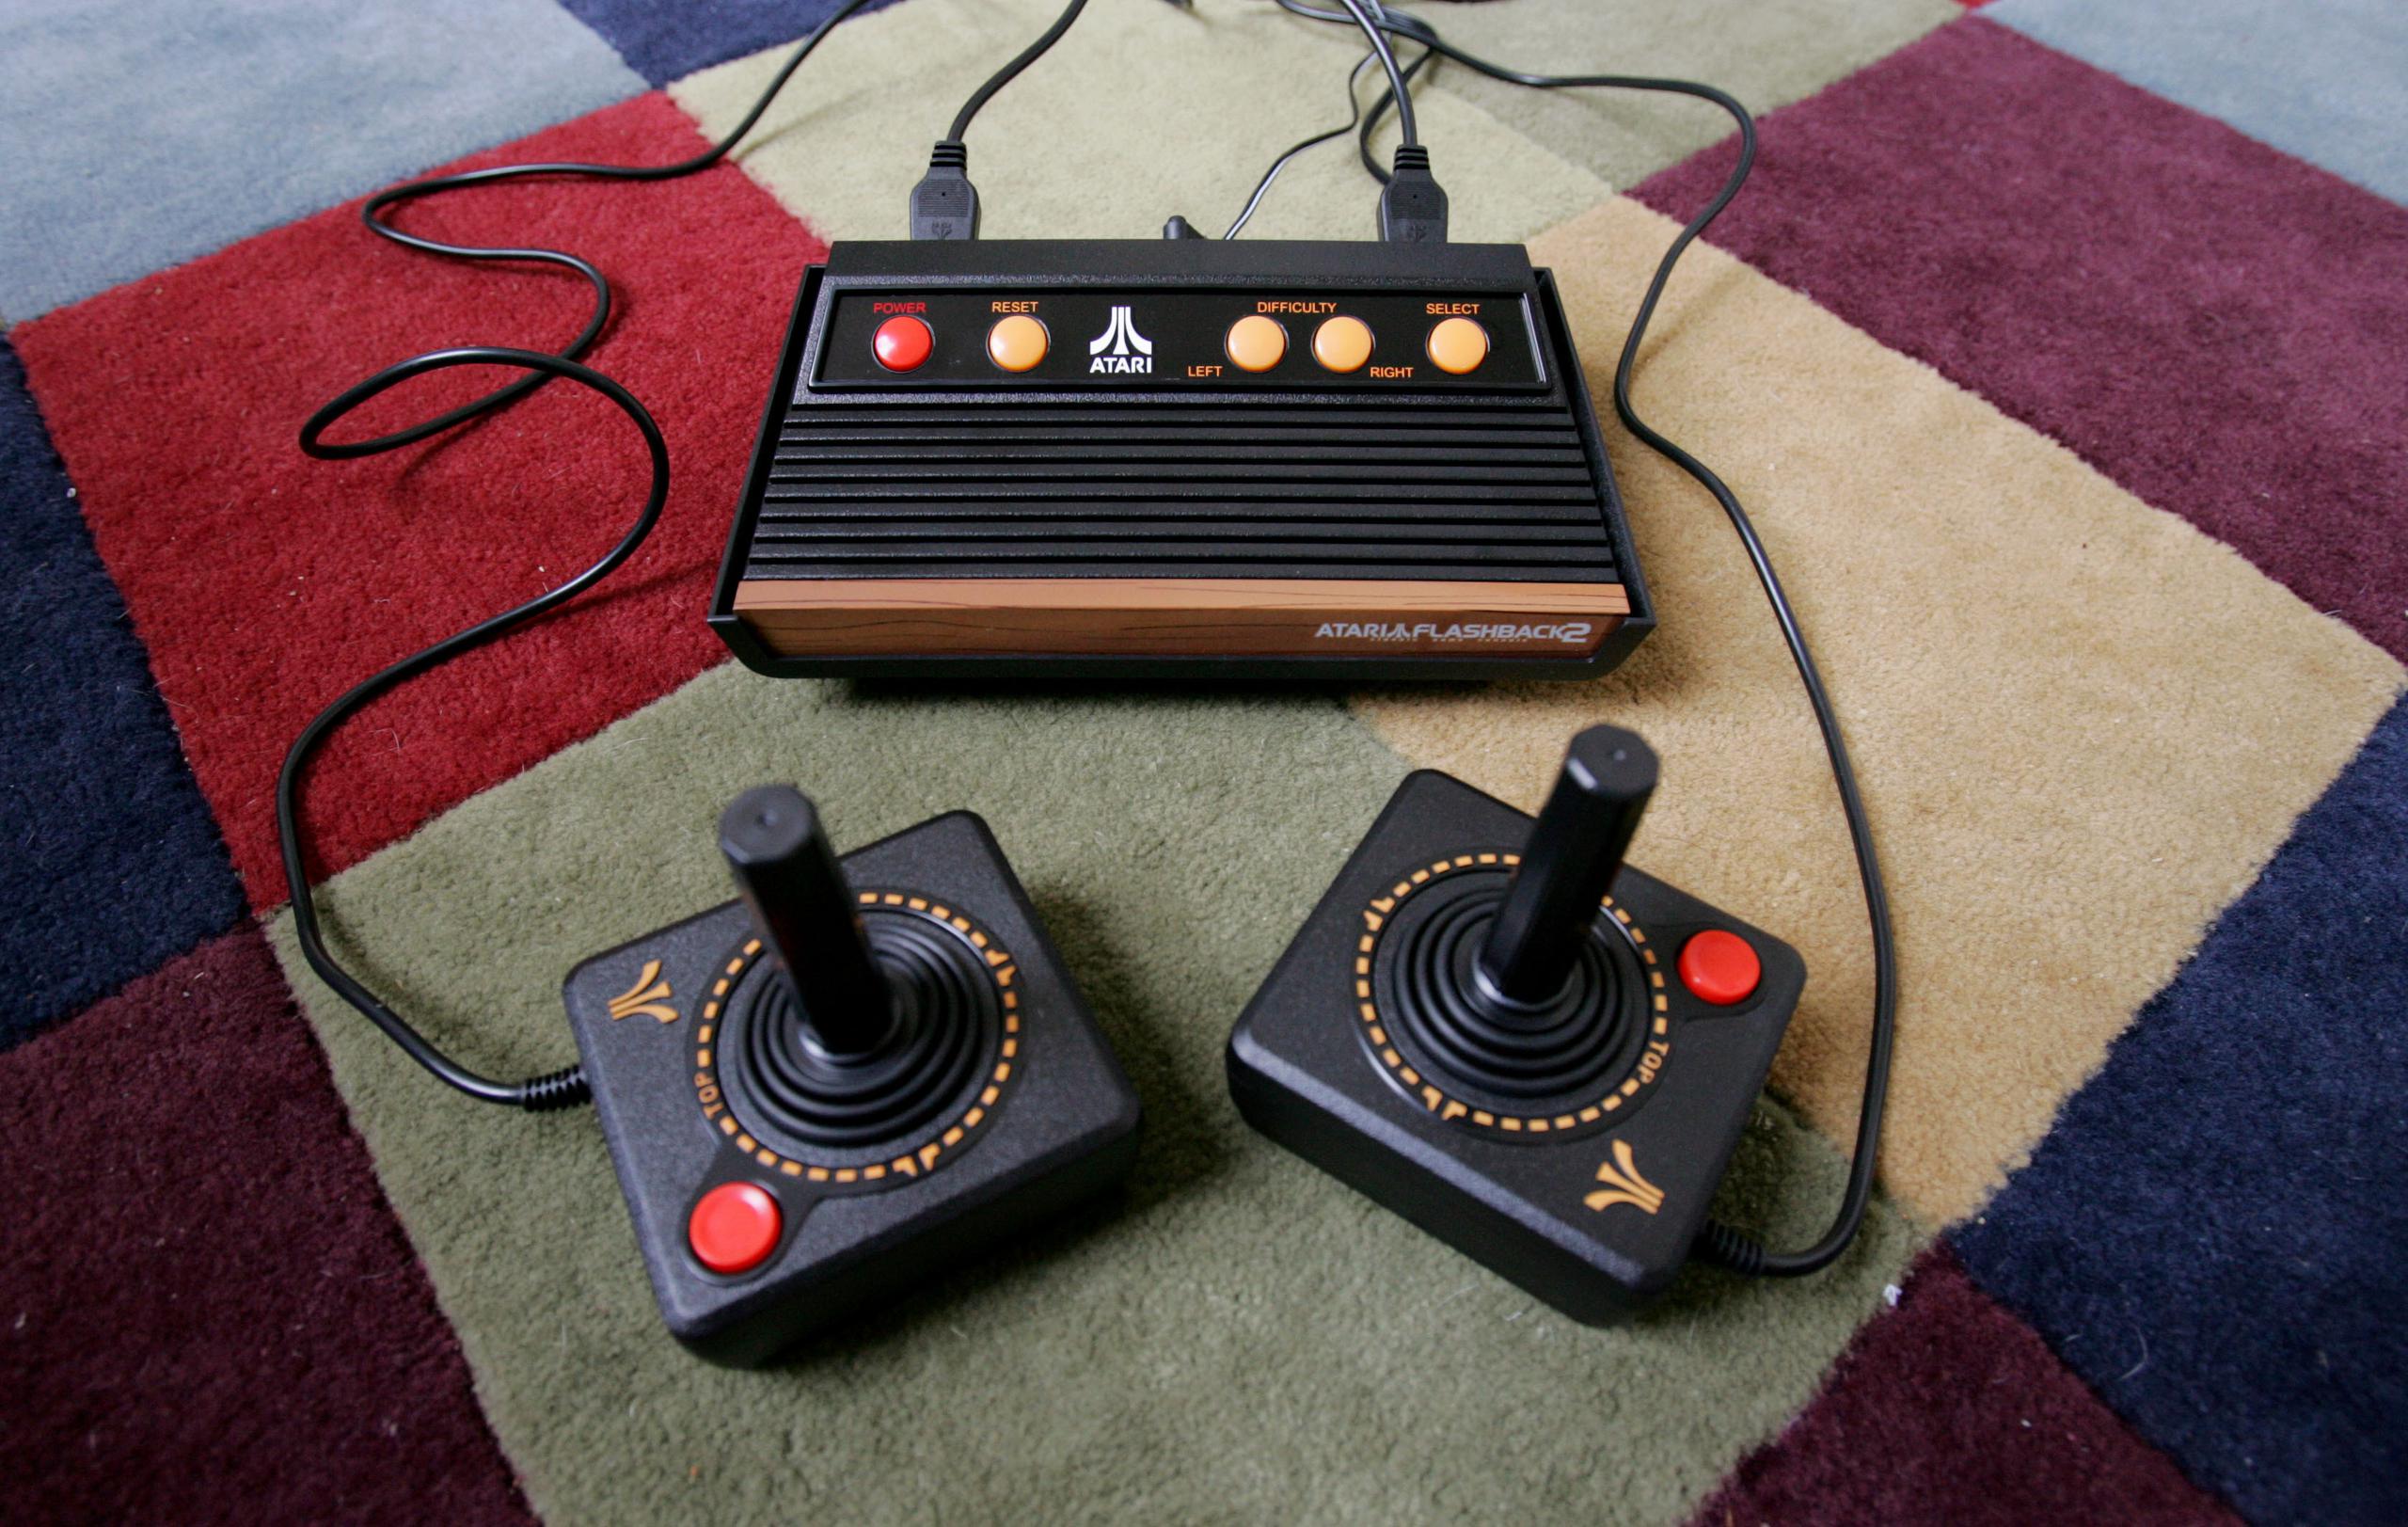 Fundado en 1972 por Nolan Bushnell y Ted Dabney, Atari se convirtió en pionero de los juegos de maquinitas, consolas caseras de videojuegos y computadoras caseras.